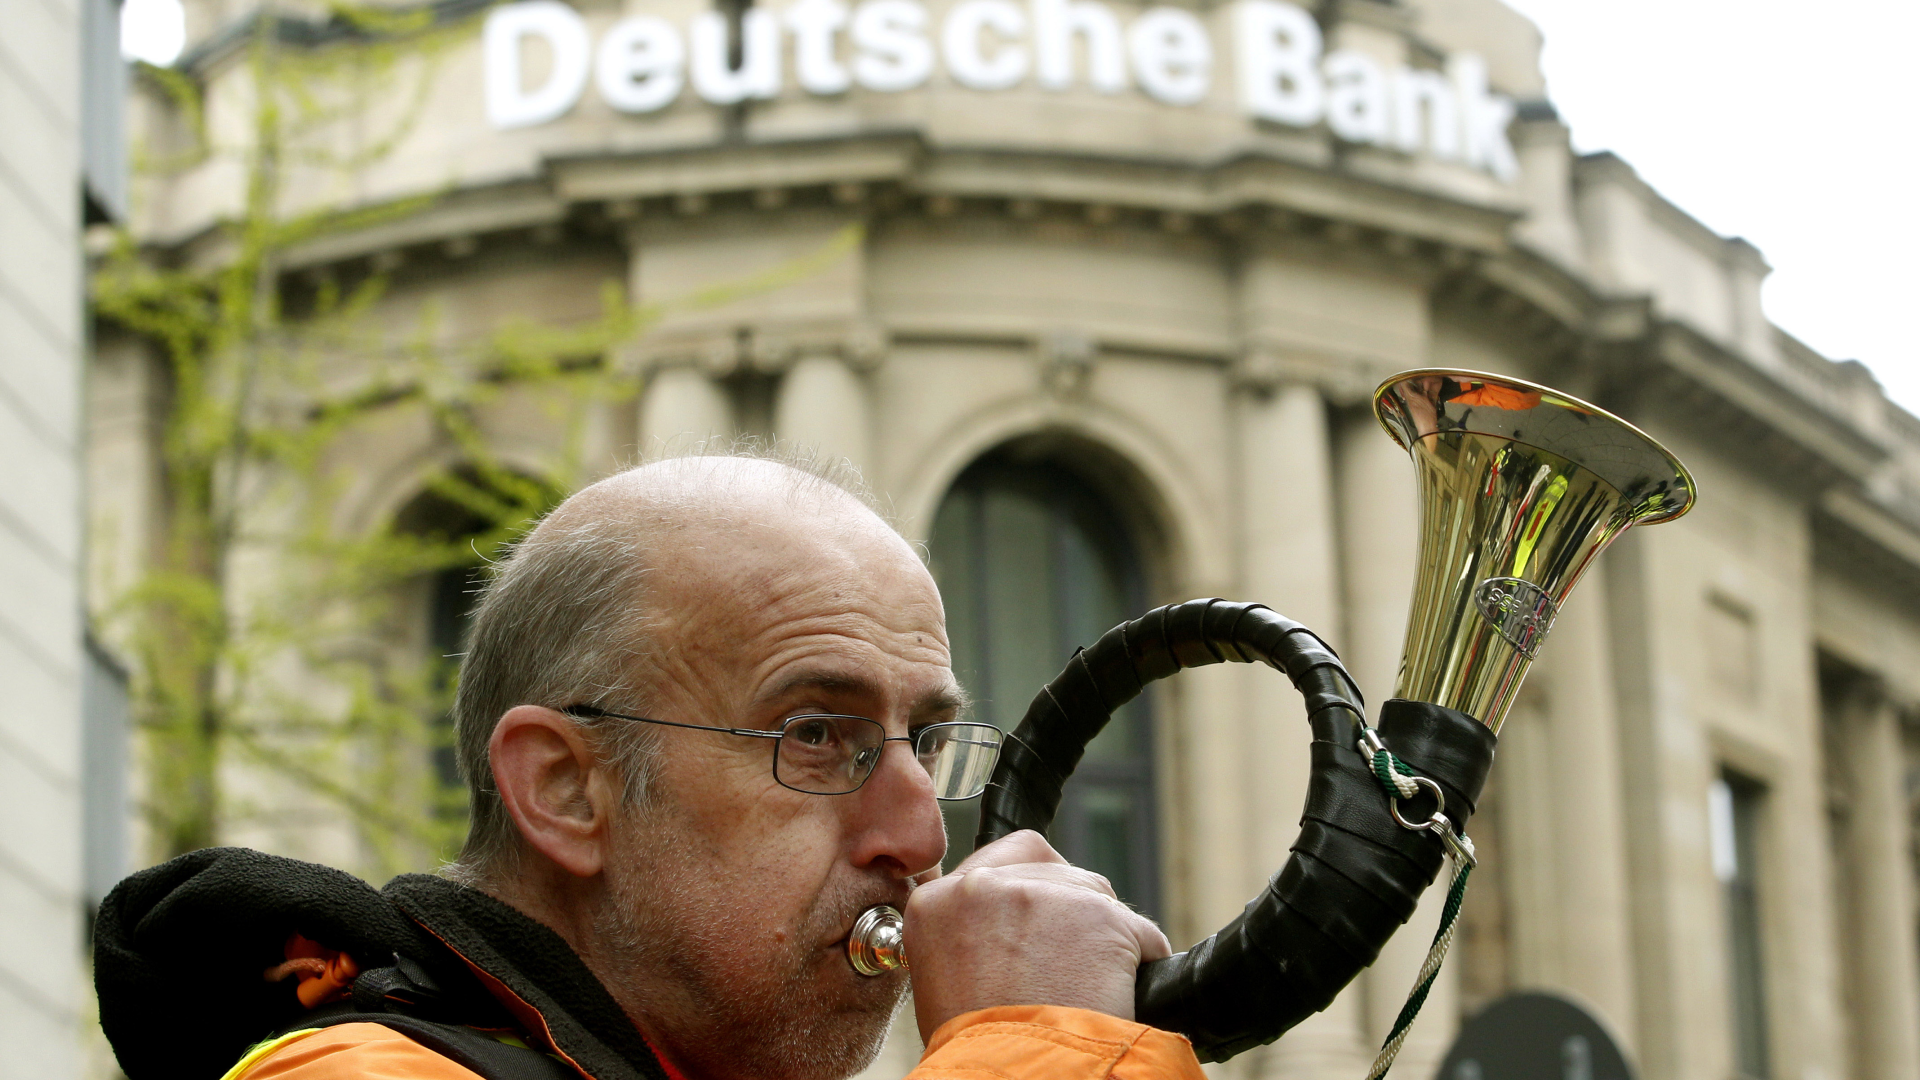 Ein Mitarbeiter der Postbank protestiert am 27.04.2015 in Essen vor der Deutschen Bank mit einem Jagdhorn. | Foto: picture alliance / dpa | Roland Weihrauch